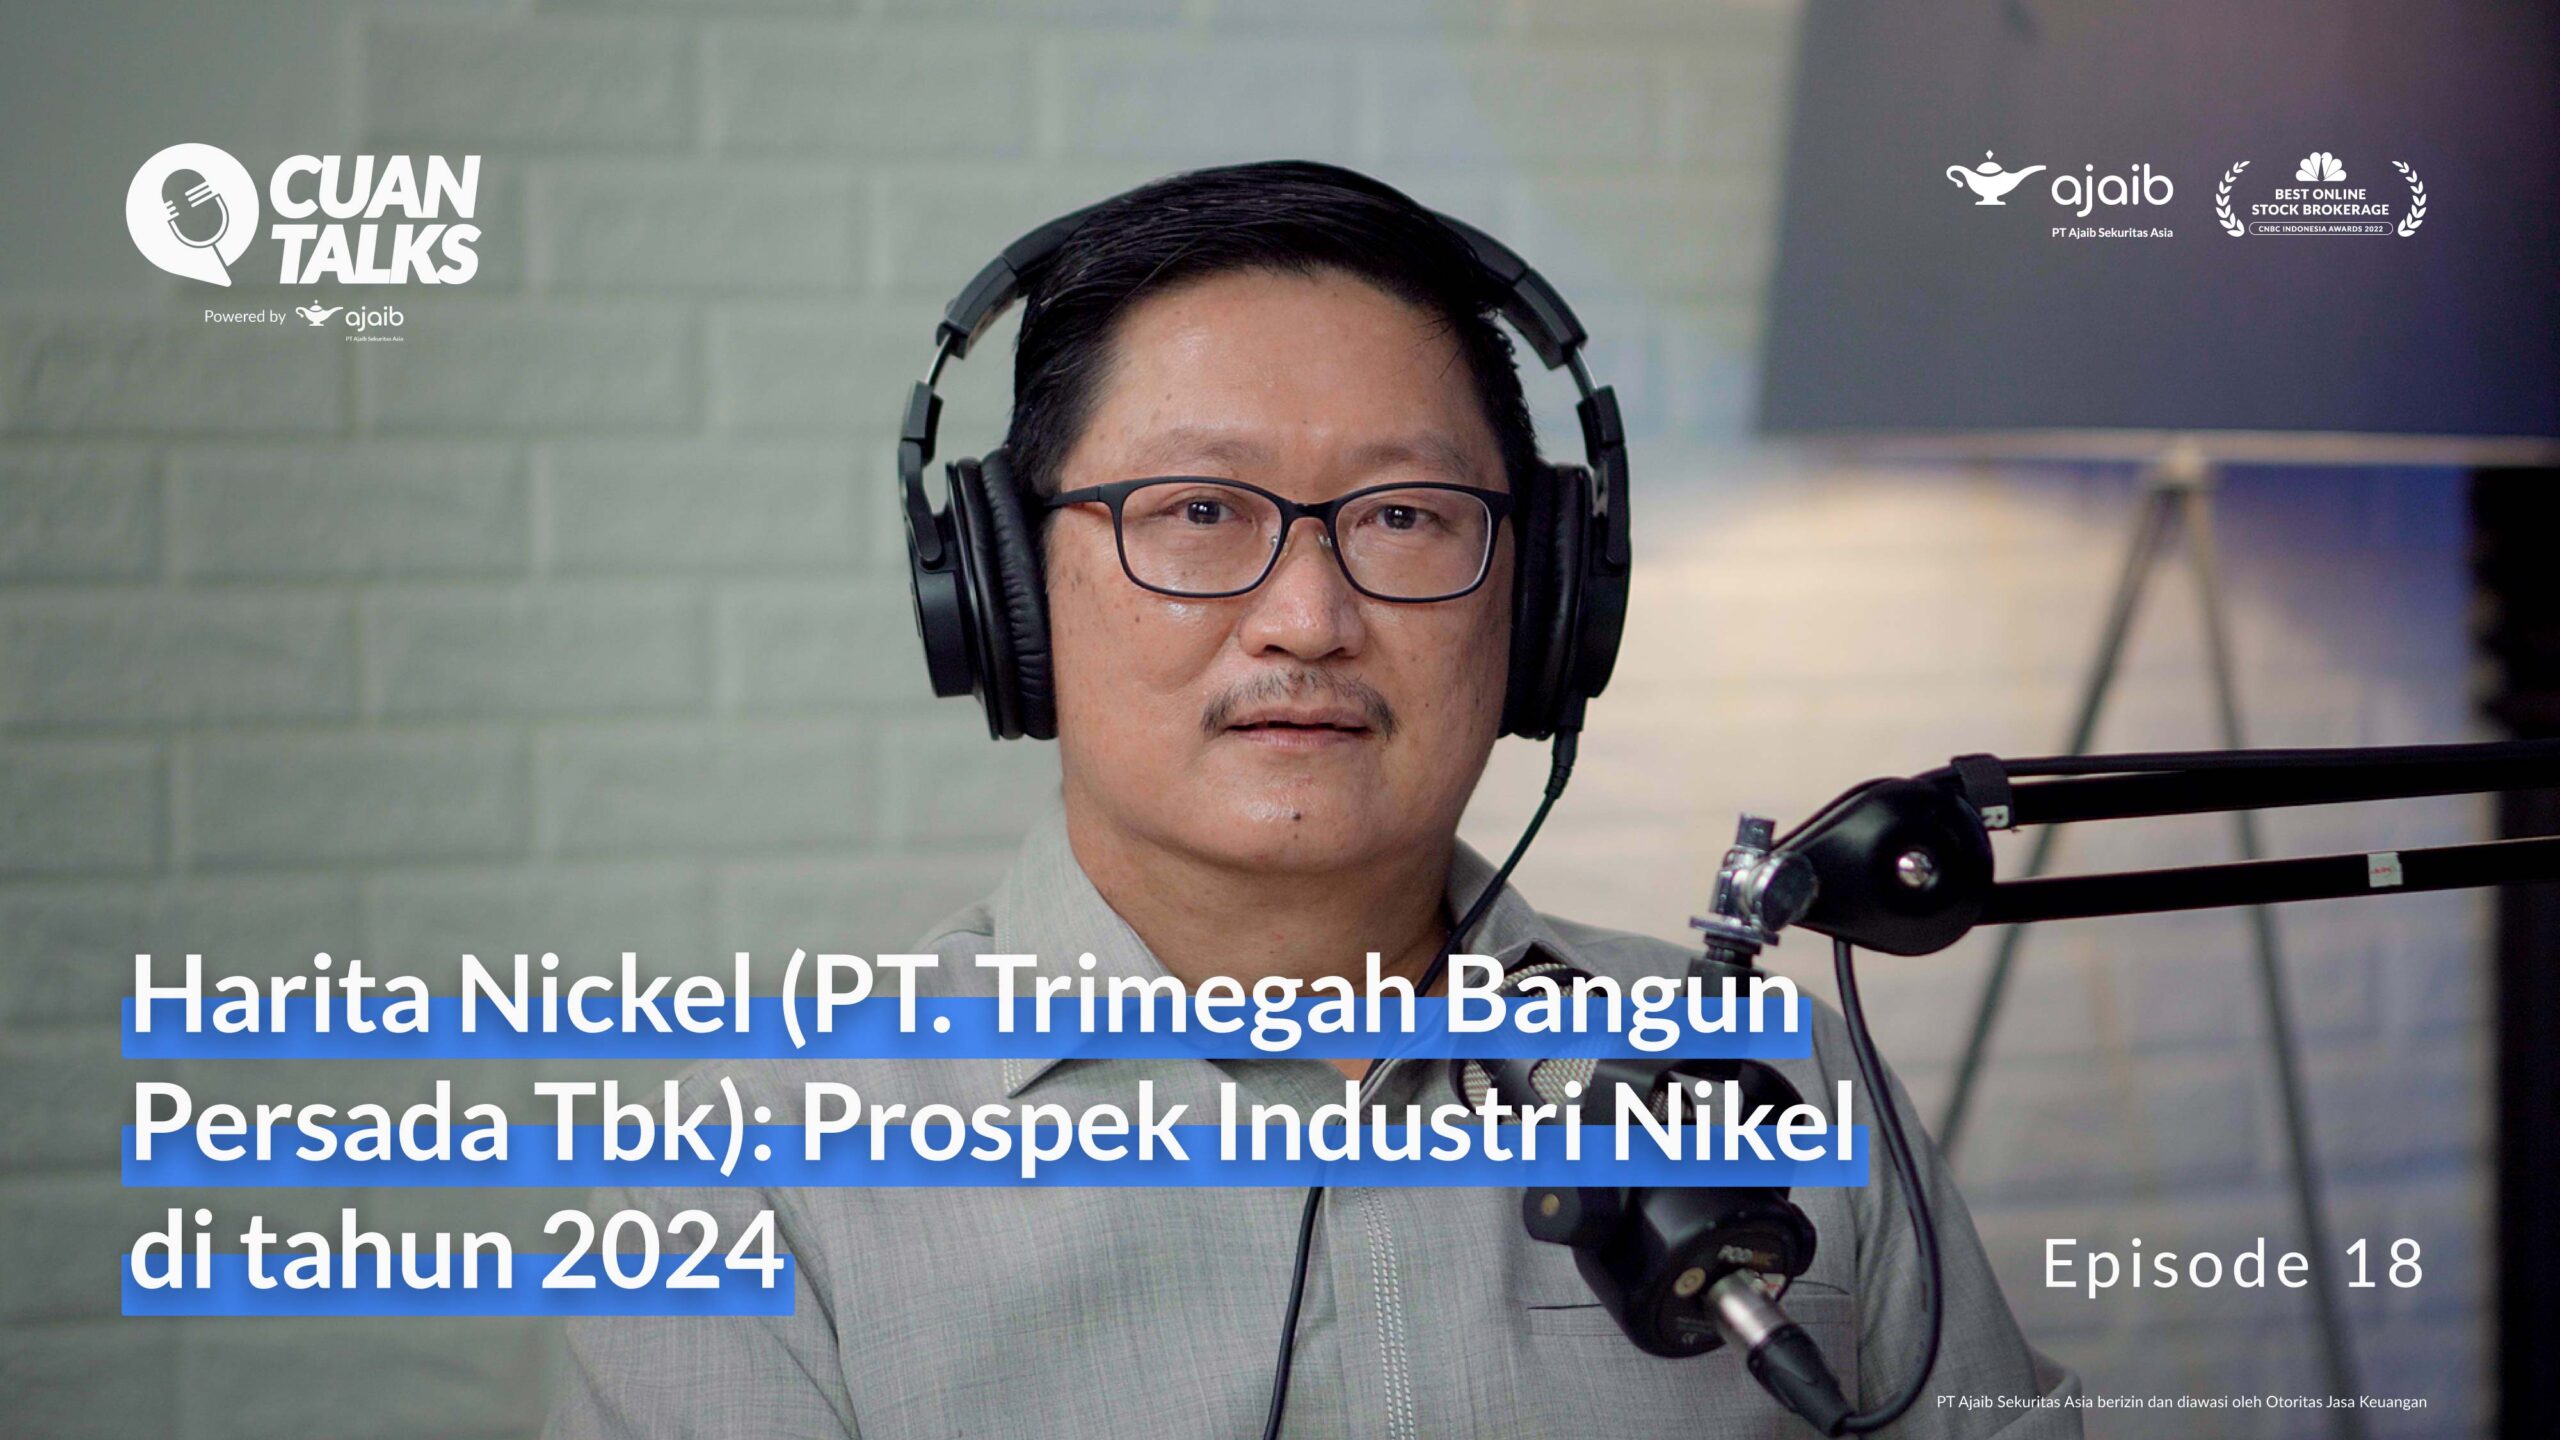 Harita Nickel (PT. Trimegah Bangun Persada Tbk): Prospek Industri Nikel di Tahun 2024